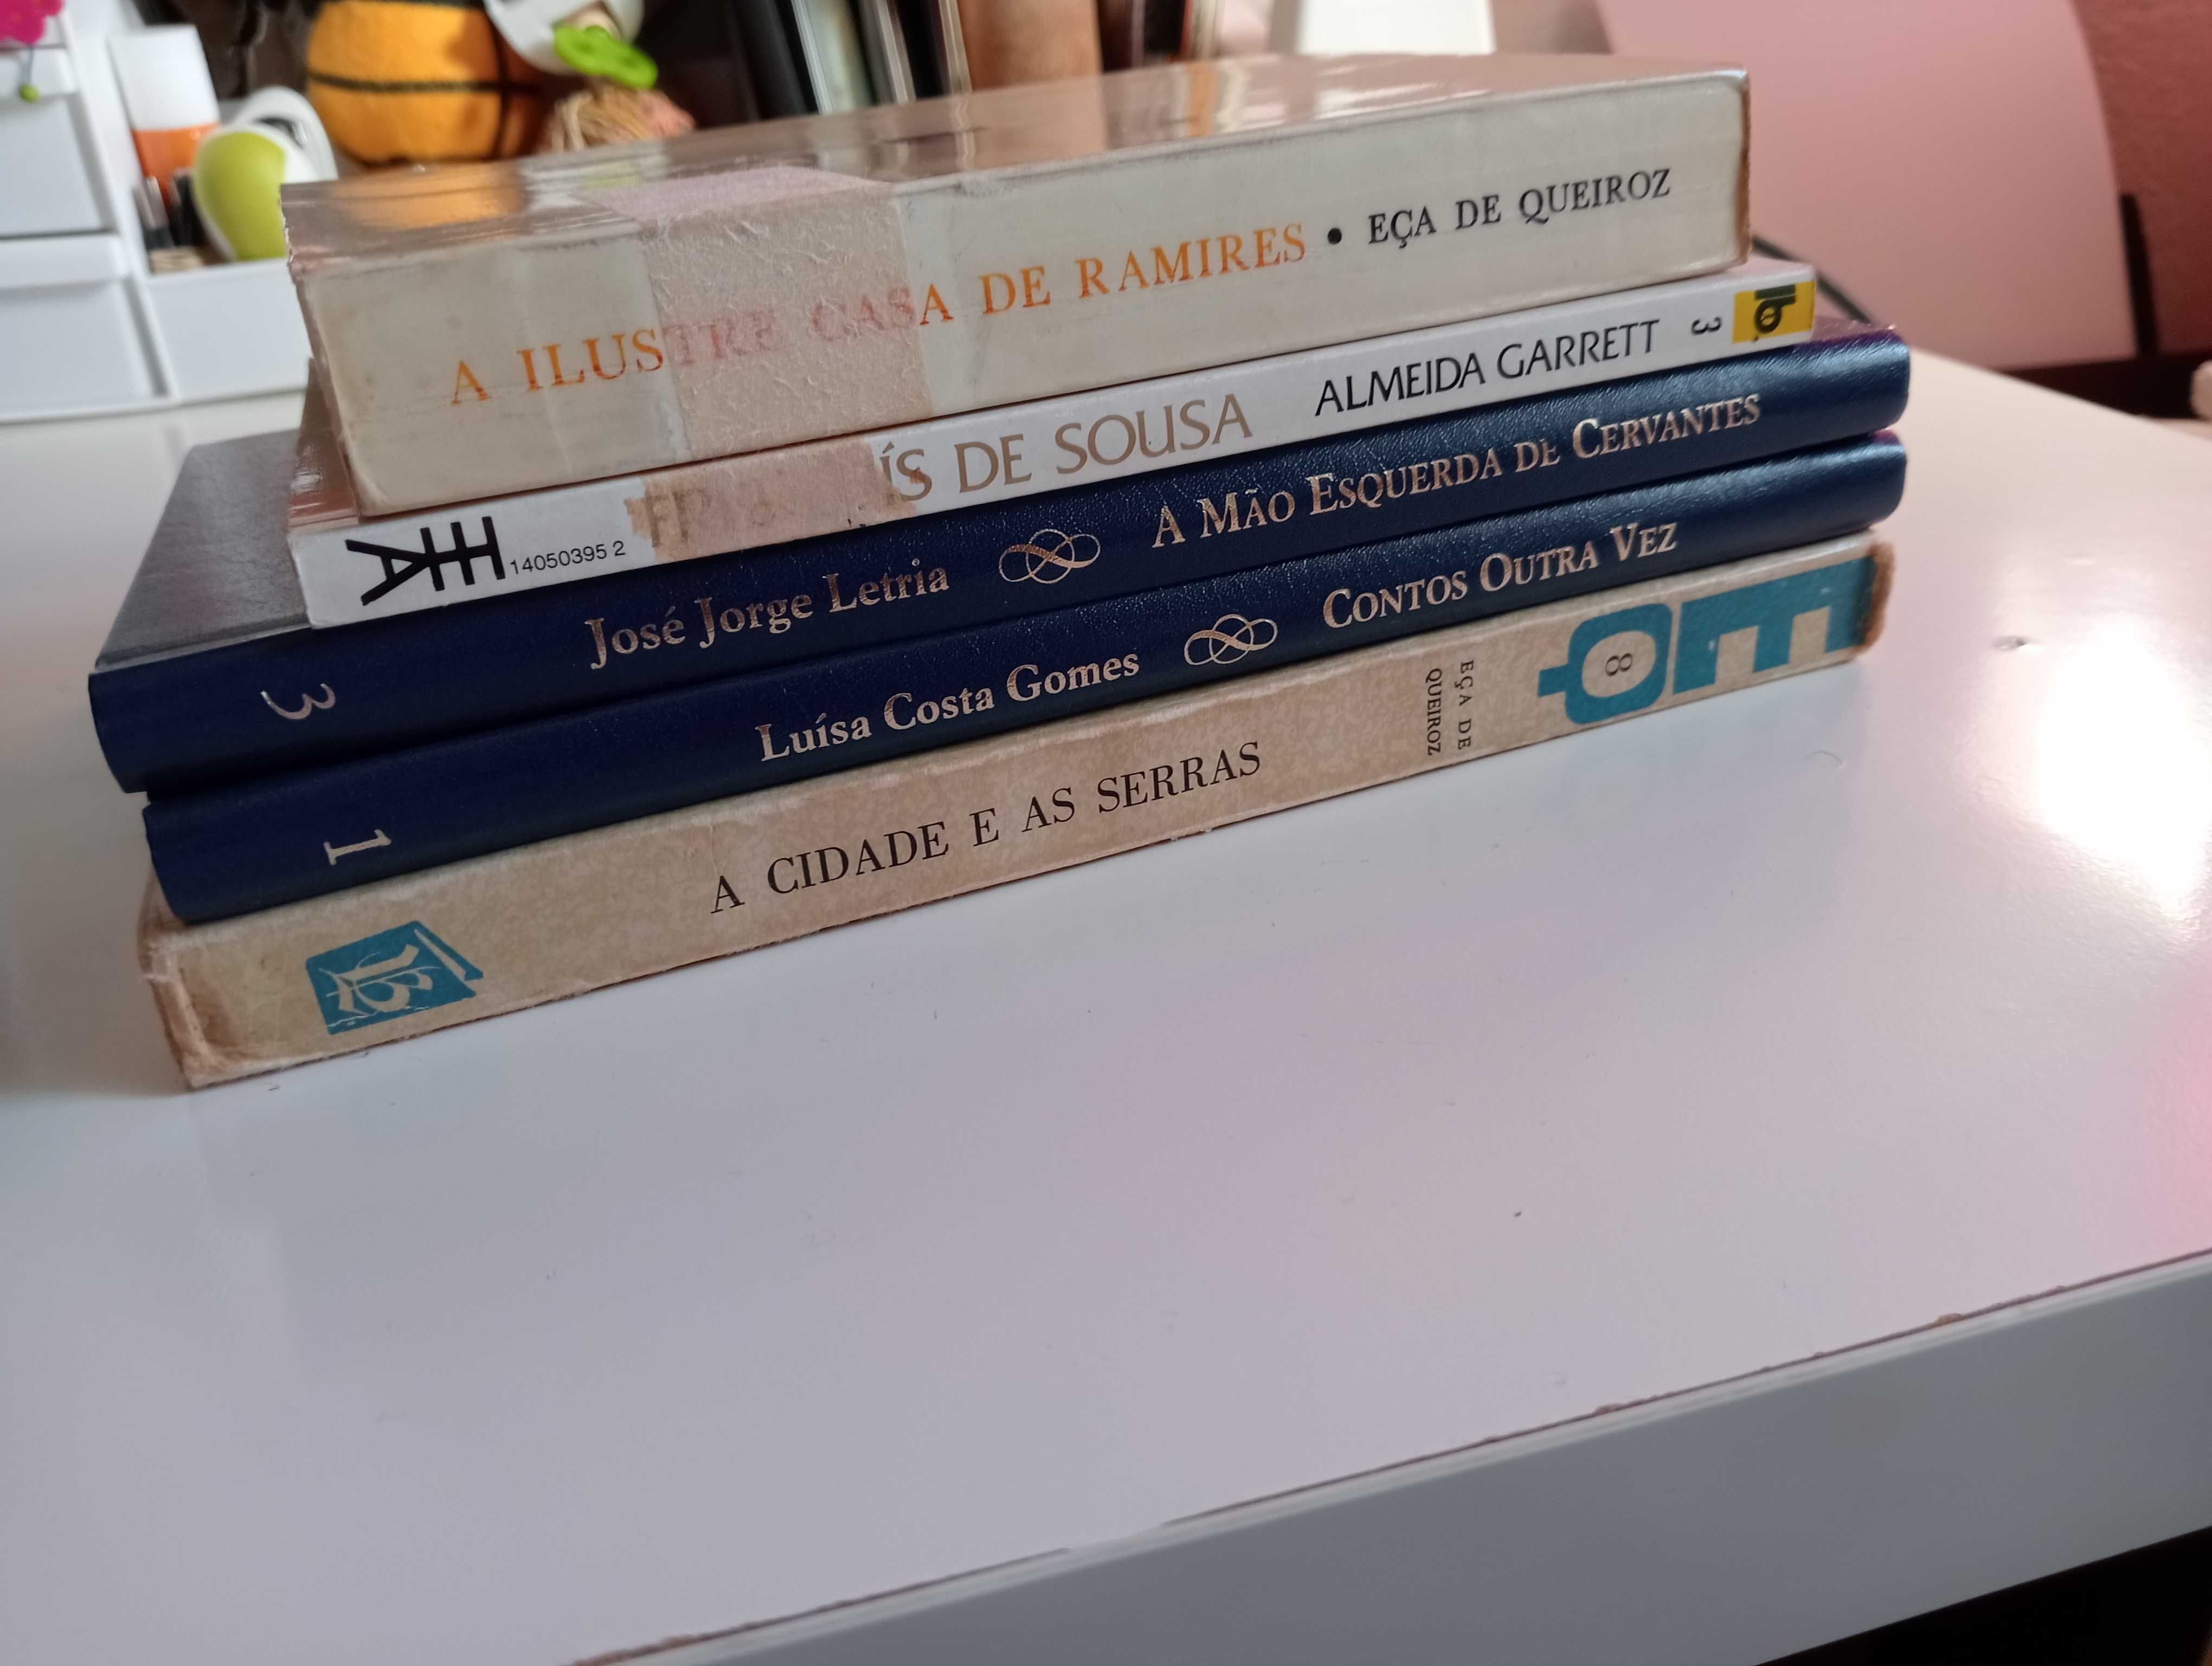 Livros e autores portugueses (vários preços)